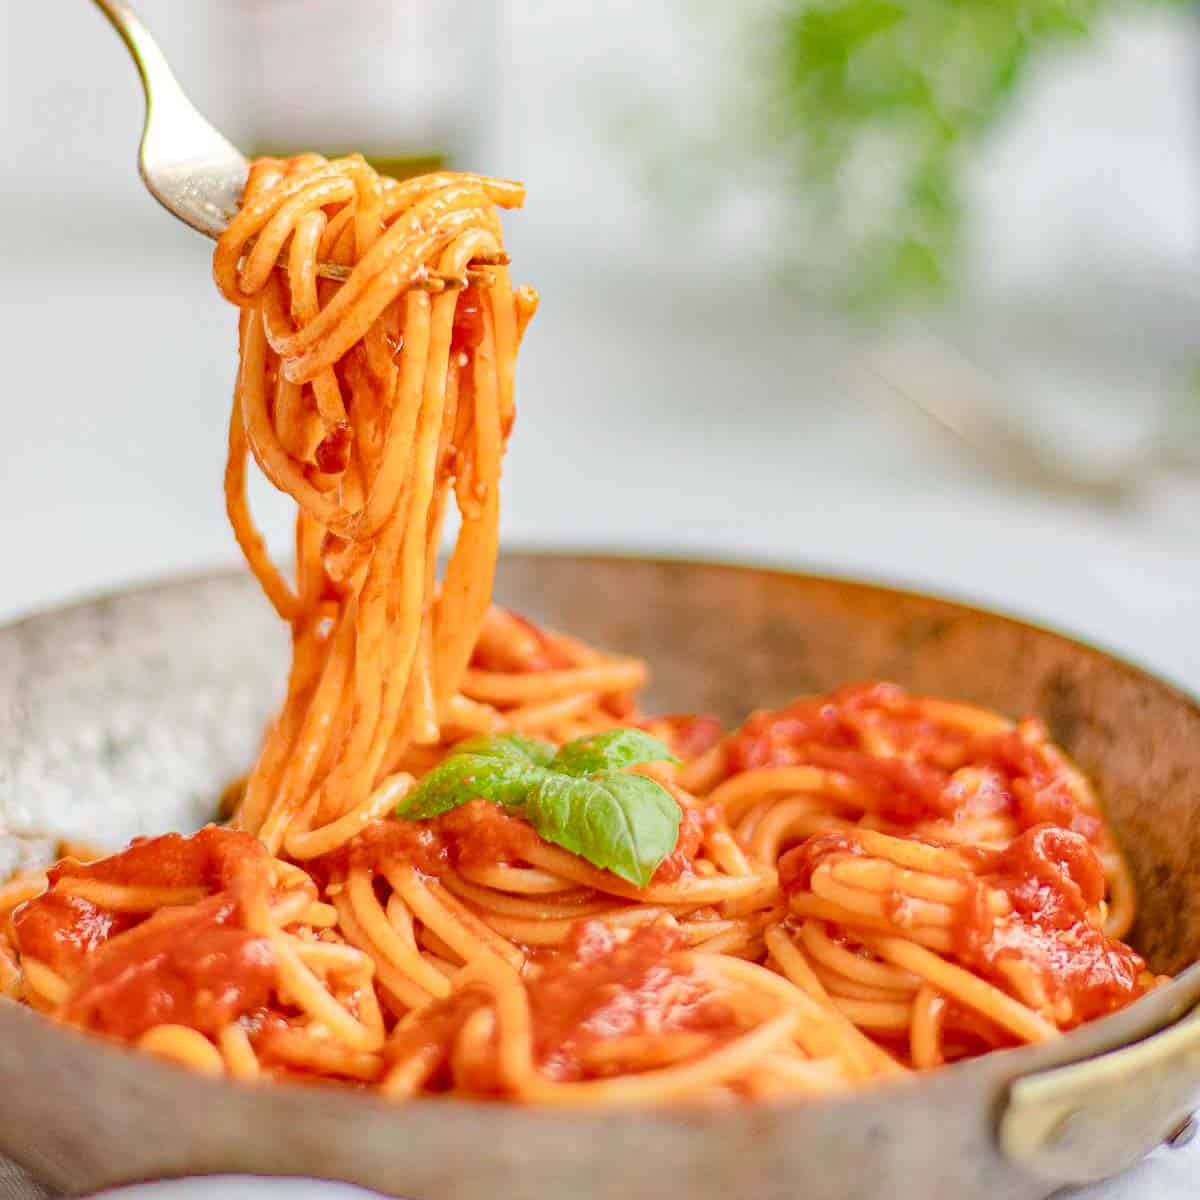 tomato basil pasta ready to eat